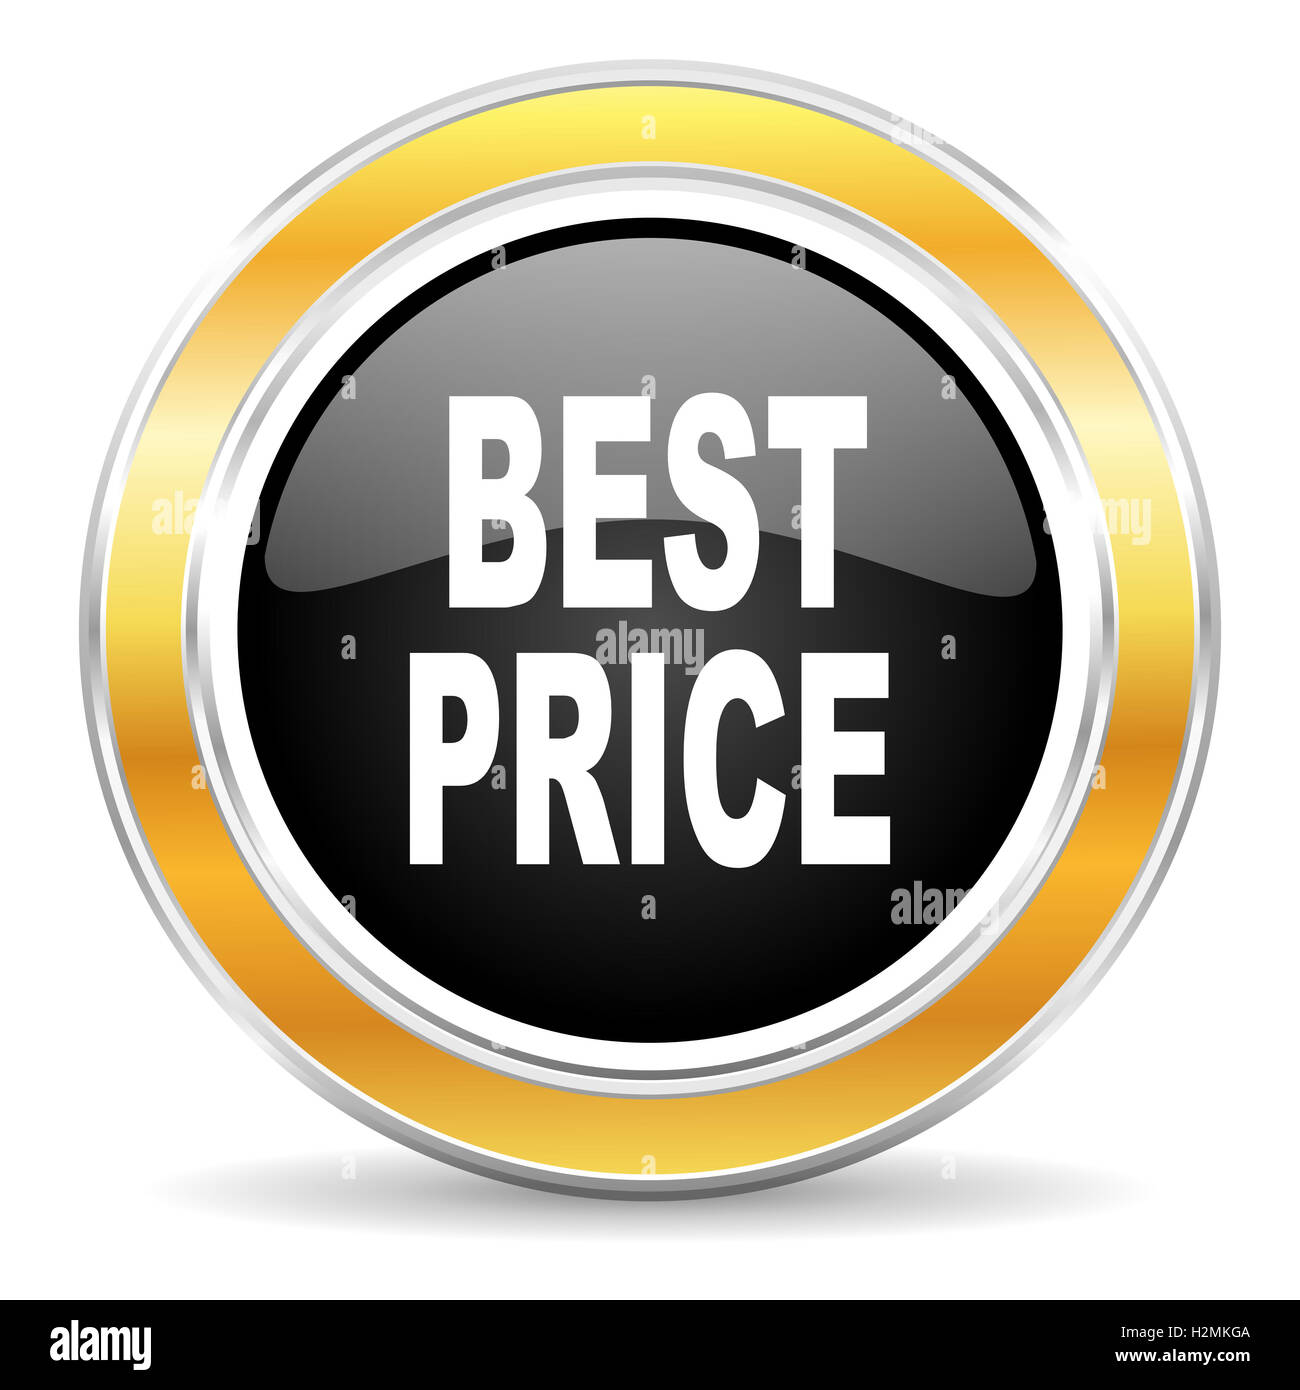 best price icon Stock Photo